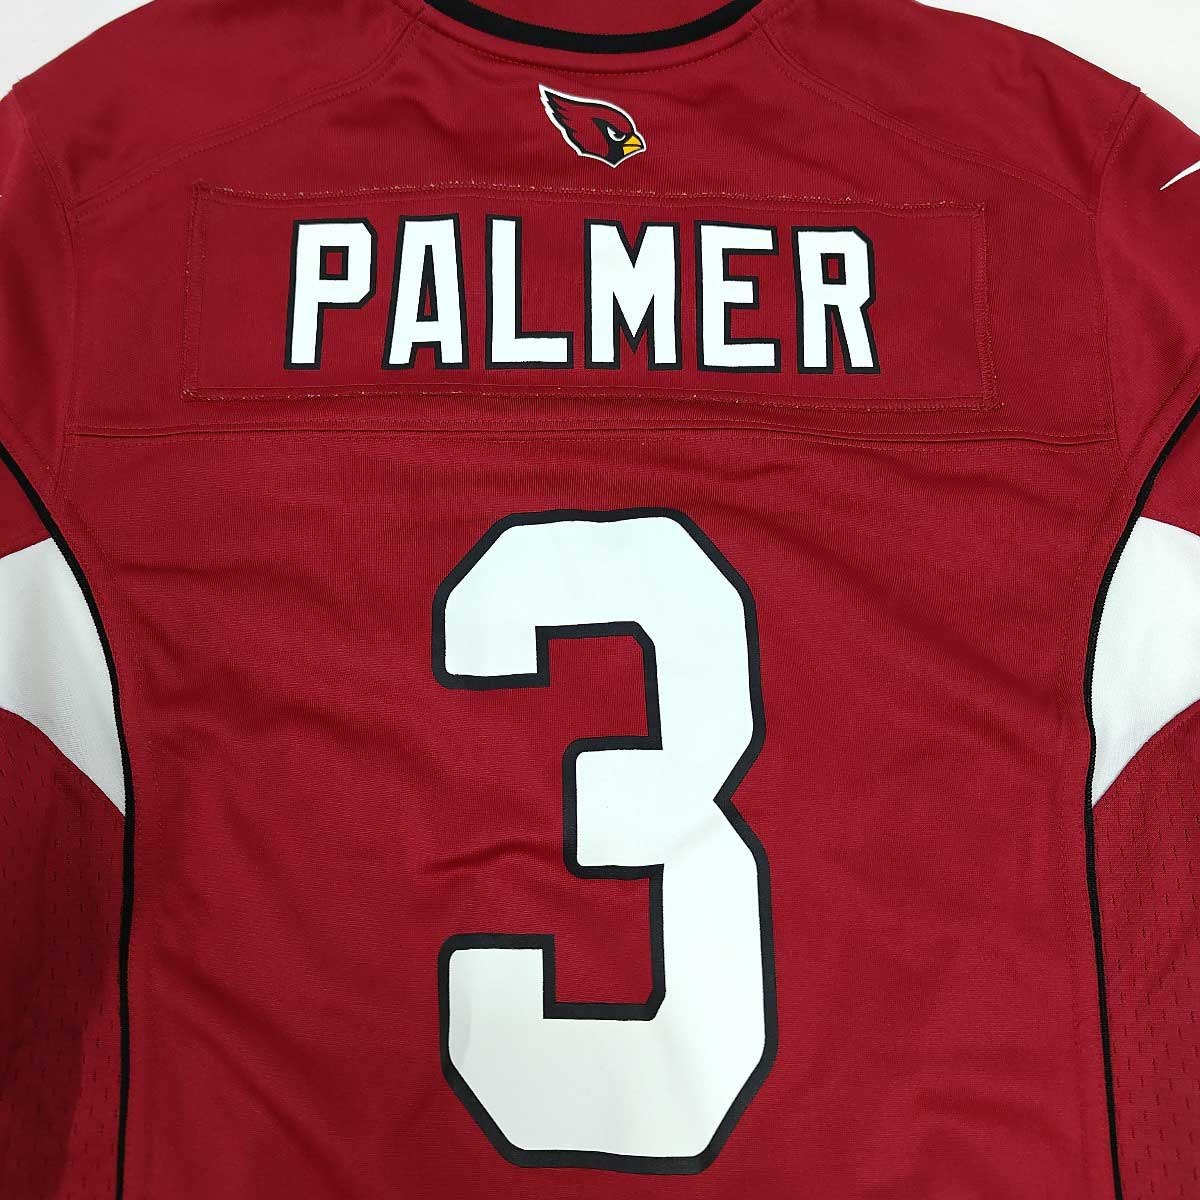 【中古】ナイキ アリゾナ・カージナルス Arizona Cardinals NFL アメフト ユニフォーム #3 カーソン・パーマー Palmer S メンズ NIKE_画像2